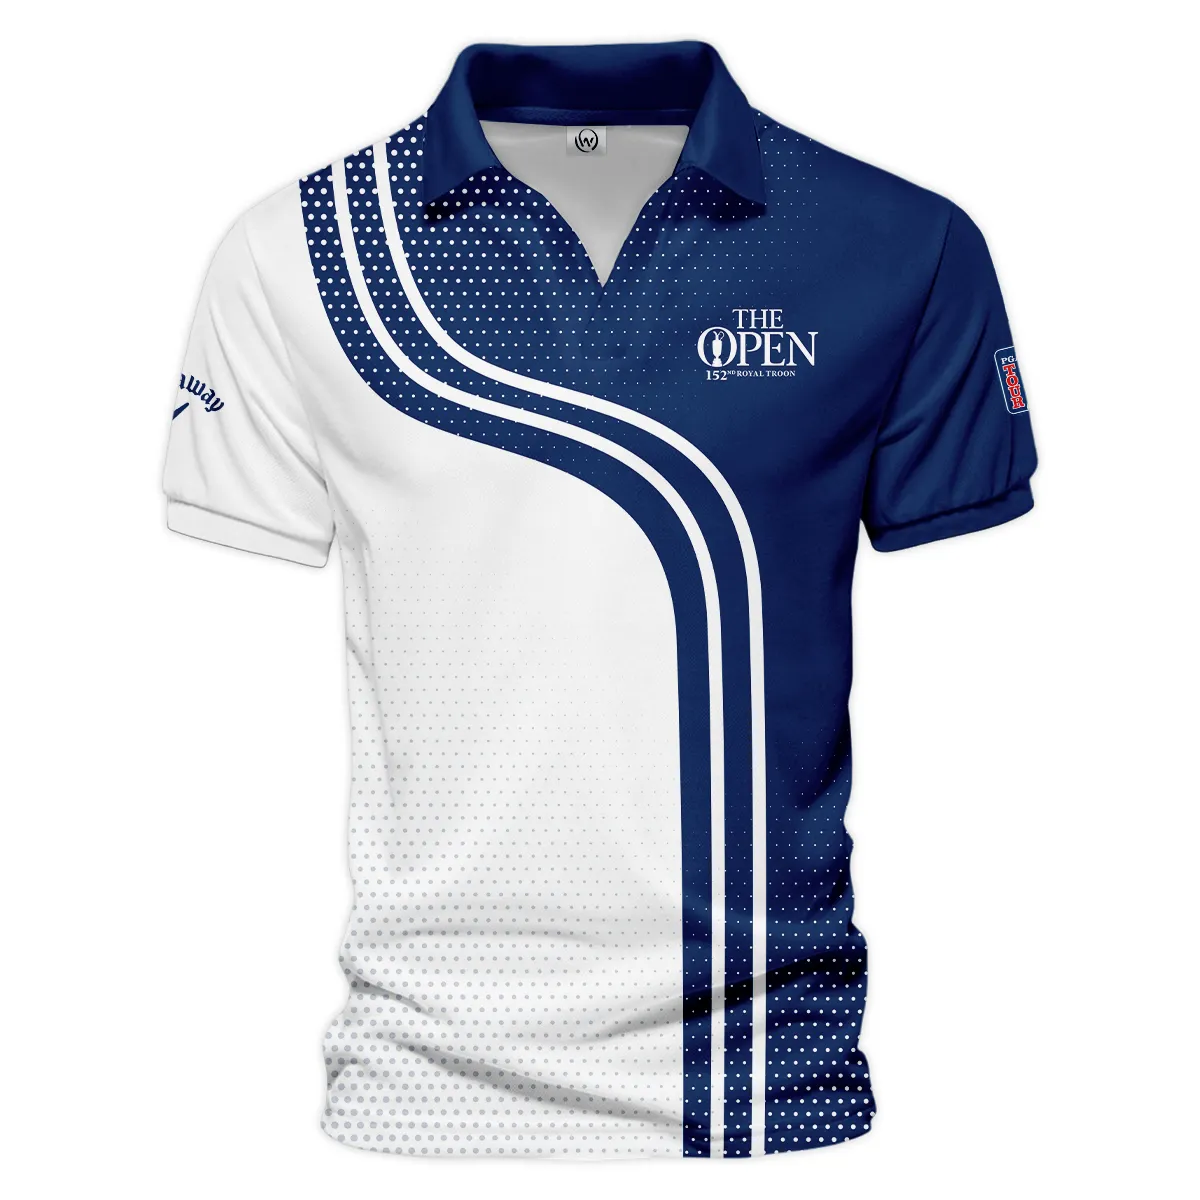 Golf Blue Mix White Sport 152nd Open Championship Pinehurst Callaway Zipper Hoodie Shirt All Over Prints QTTOP1806A1CLWZHD